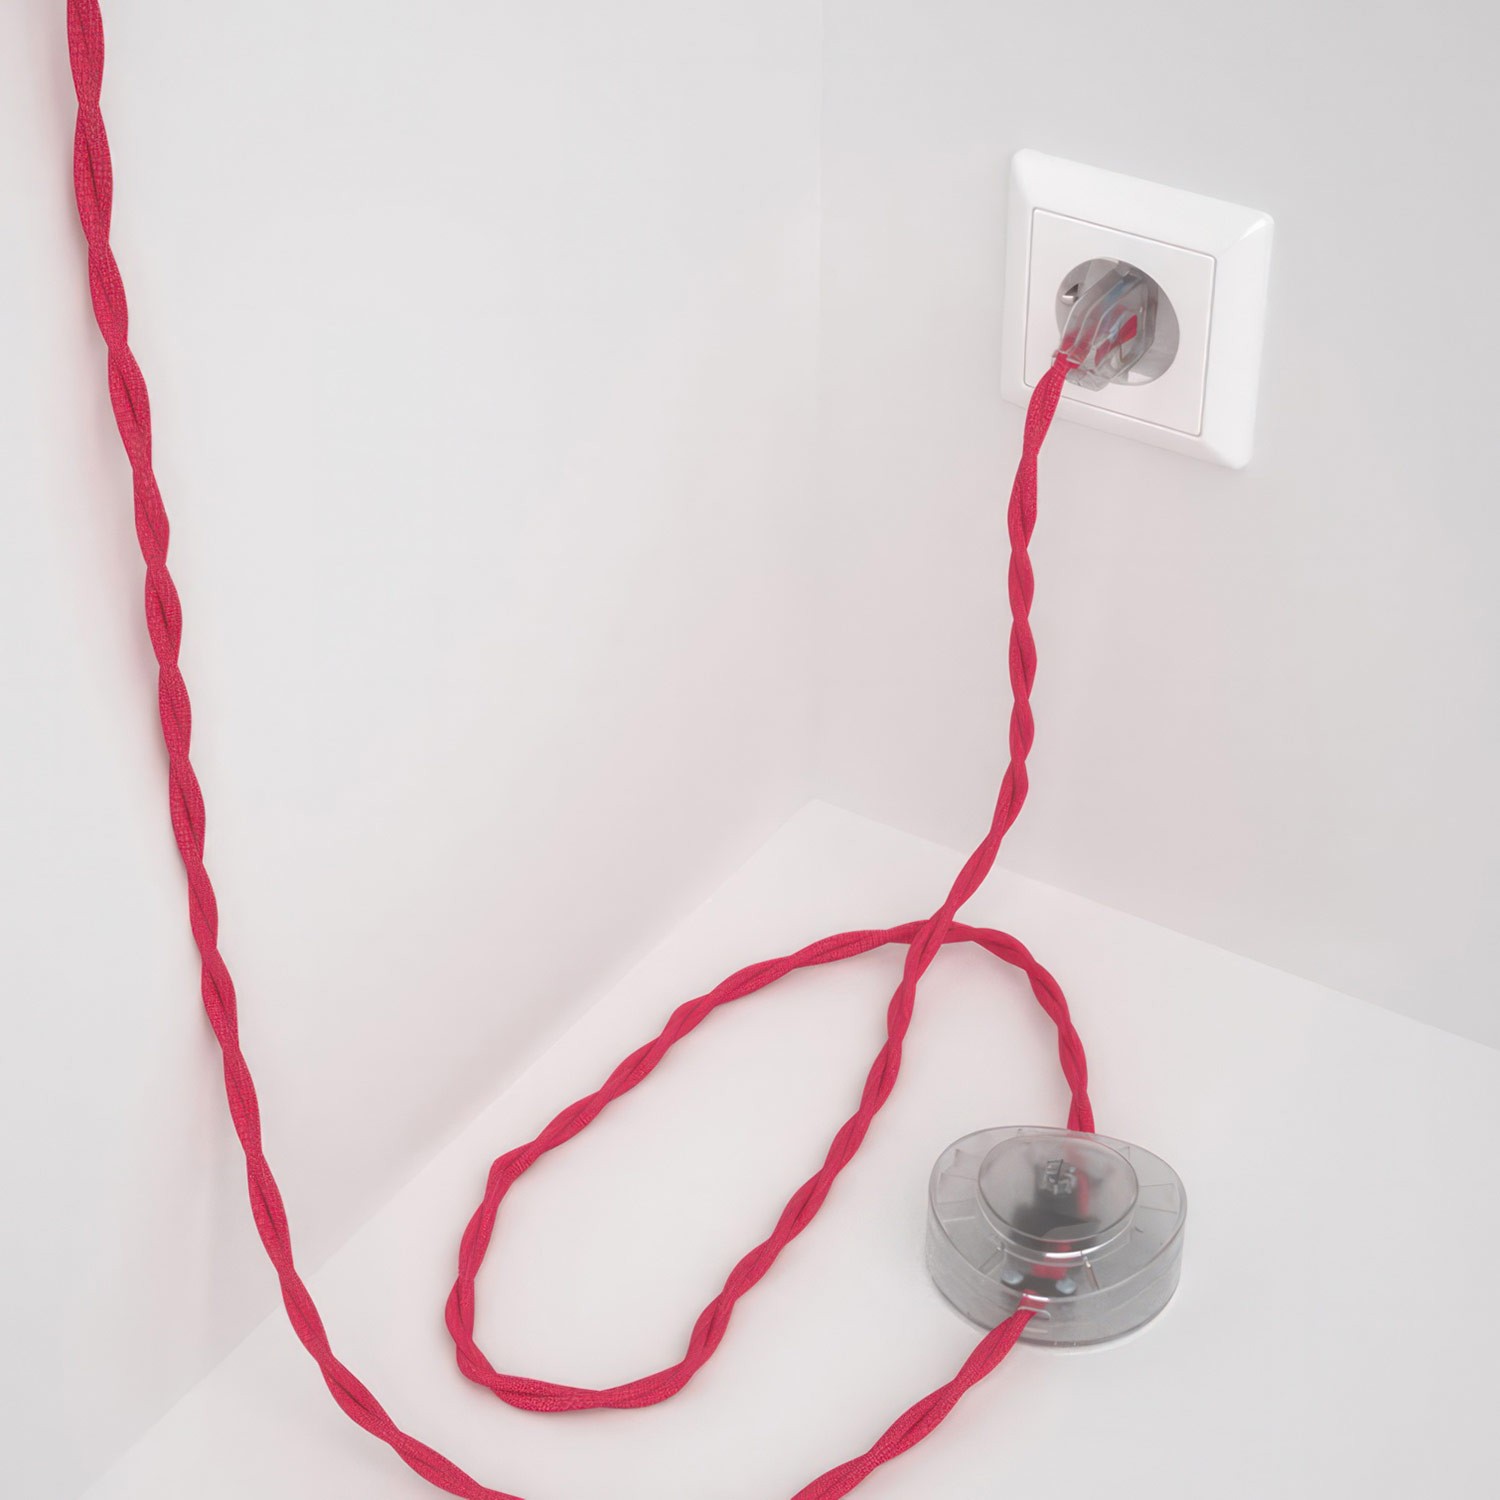 Cableado para lámpara de pie, cable TM08 Efecto Seda Fuchsia 3 m. Elige tu el color de la clavija y del interruptor!